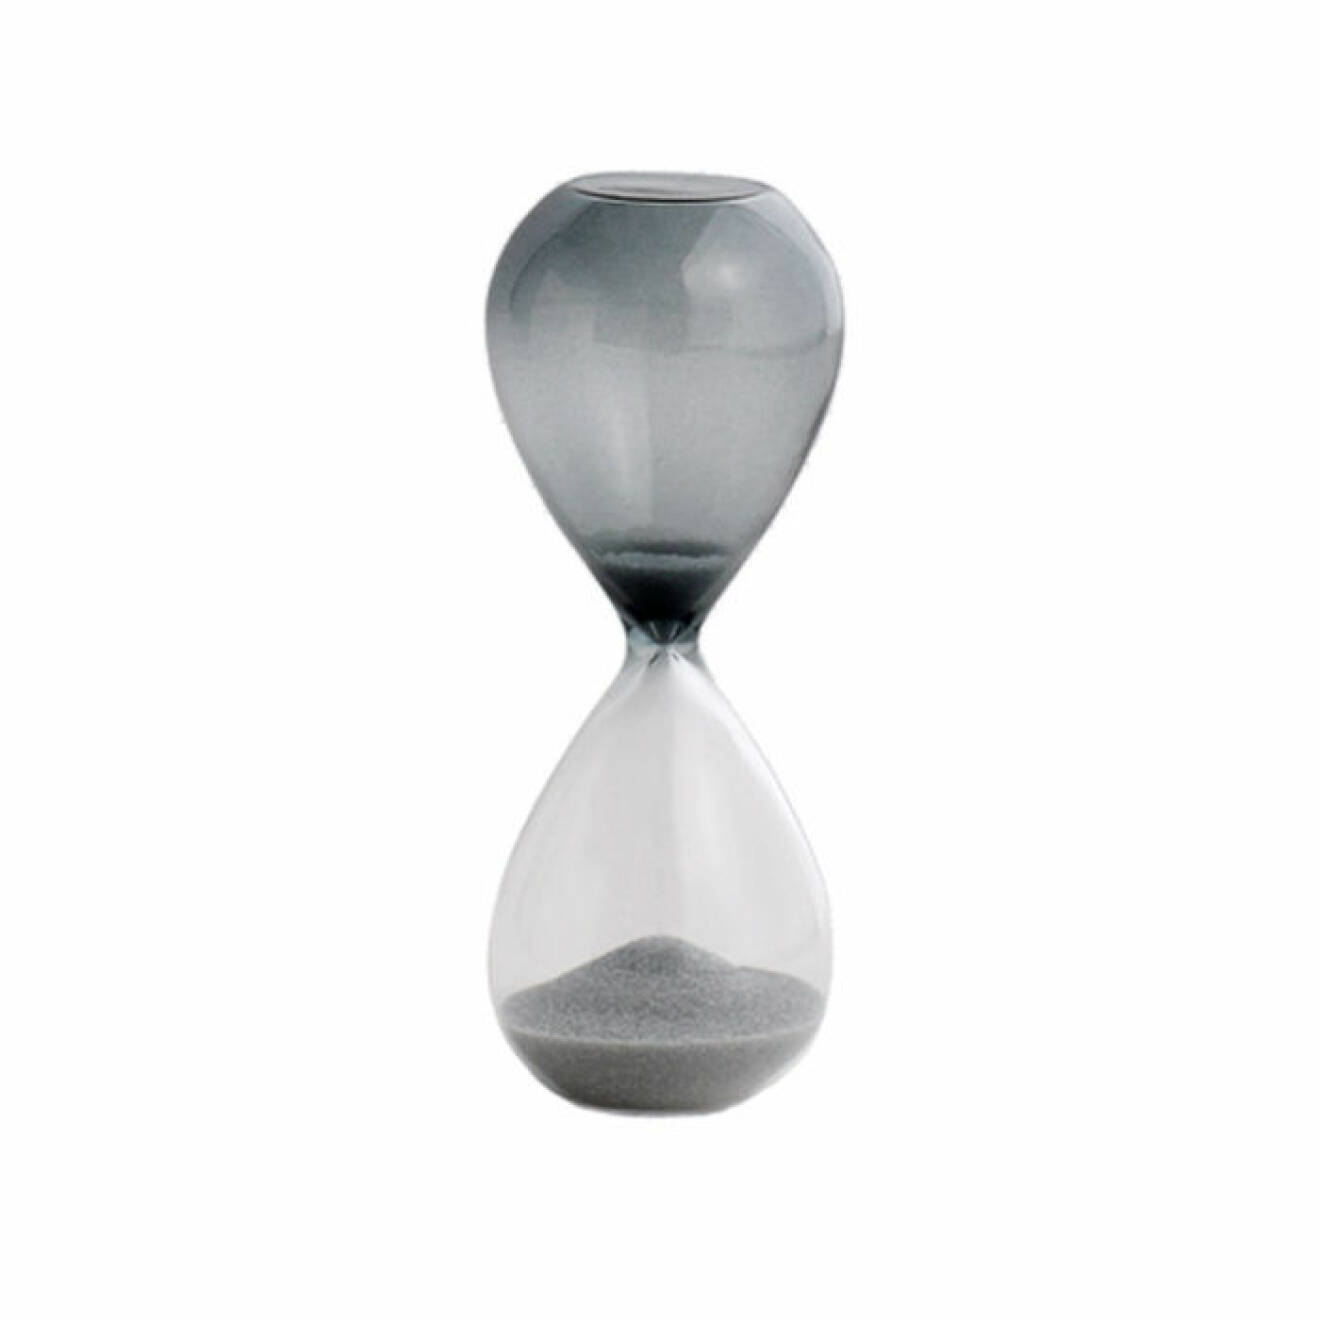 Dekorativt timglas i delvis färgat glas och med grå sand